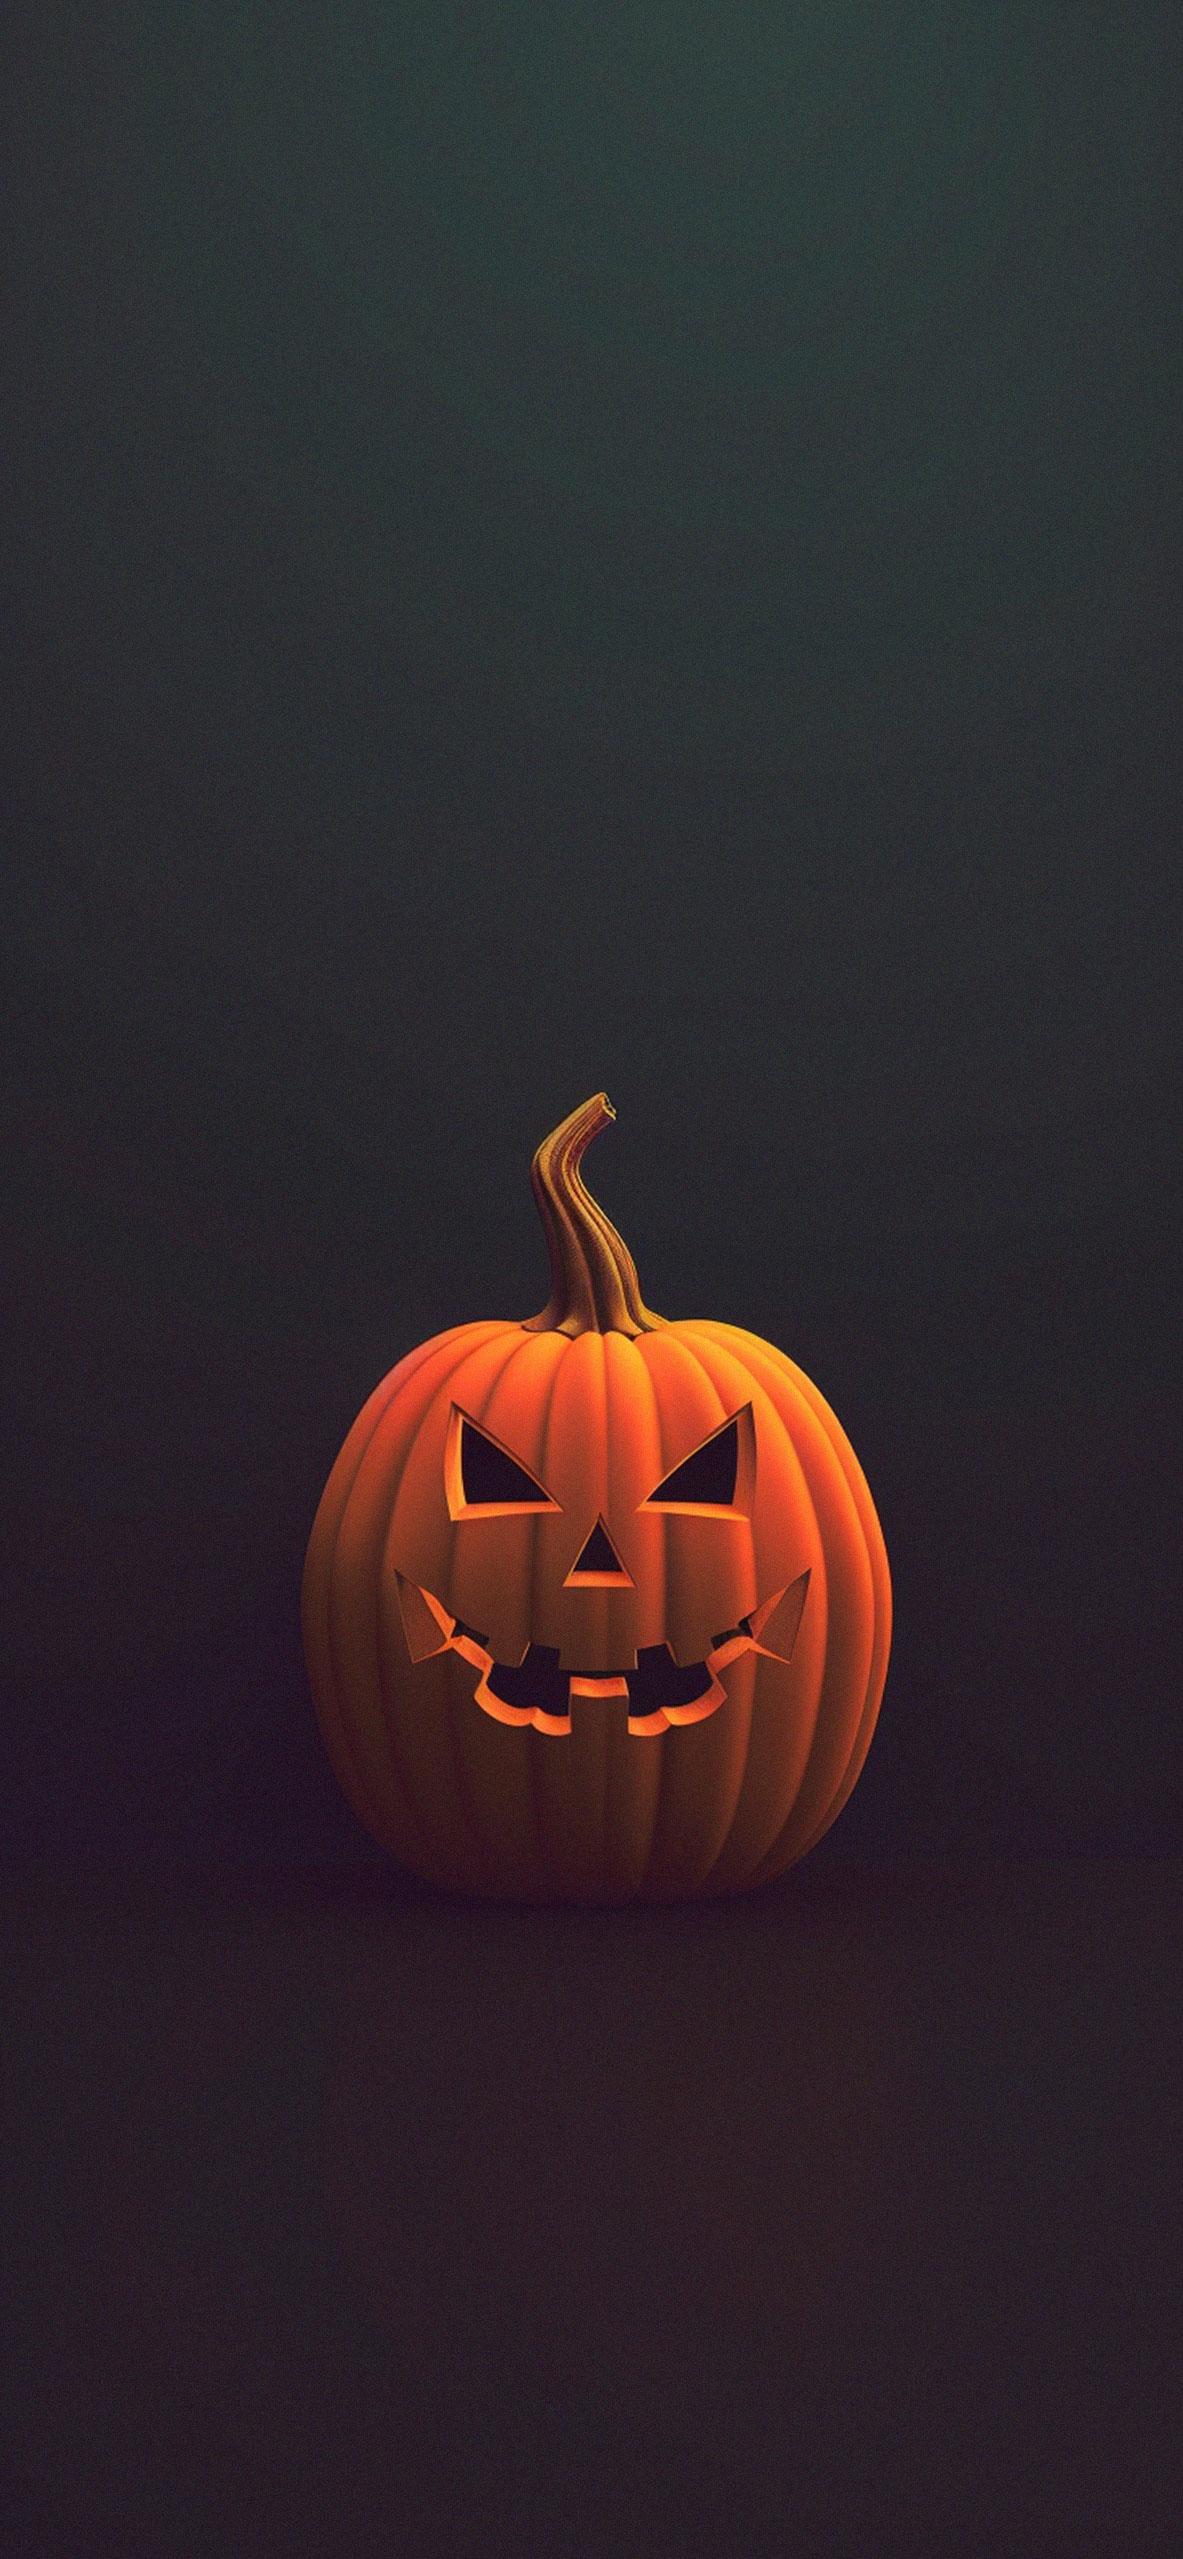 Ominous Pumpkin Halloween Wallpaper Spooky